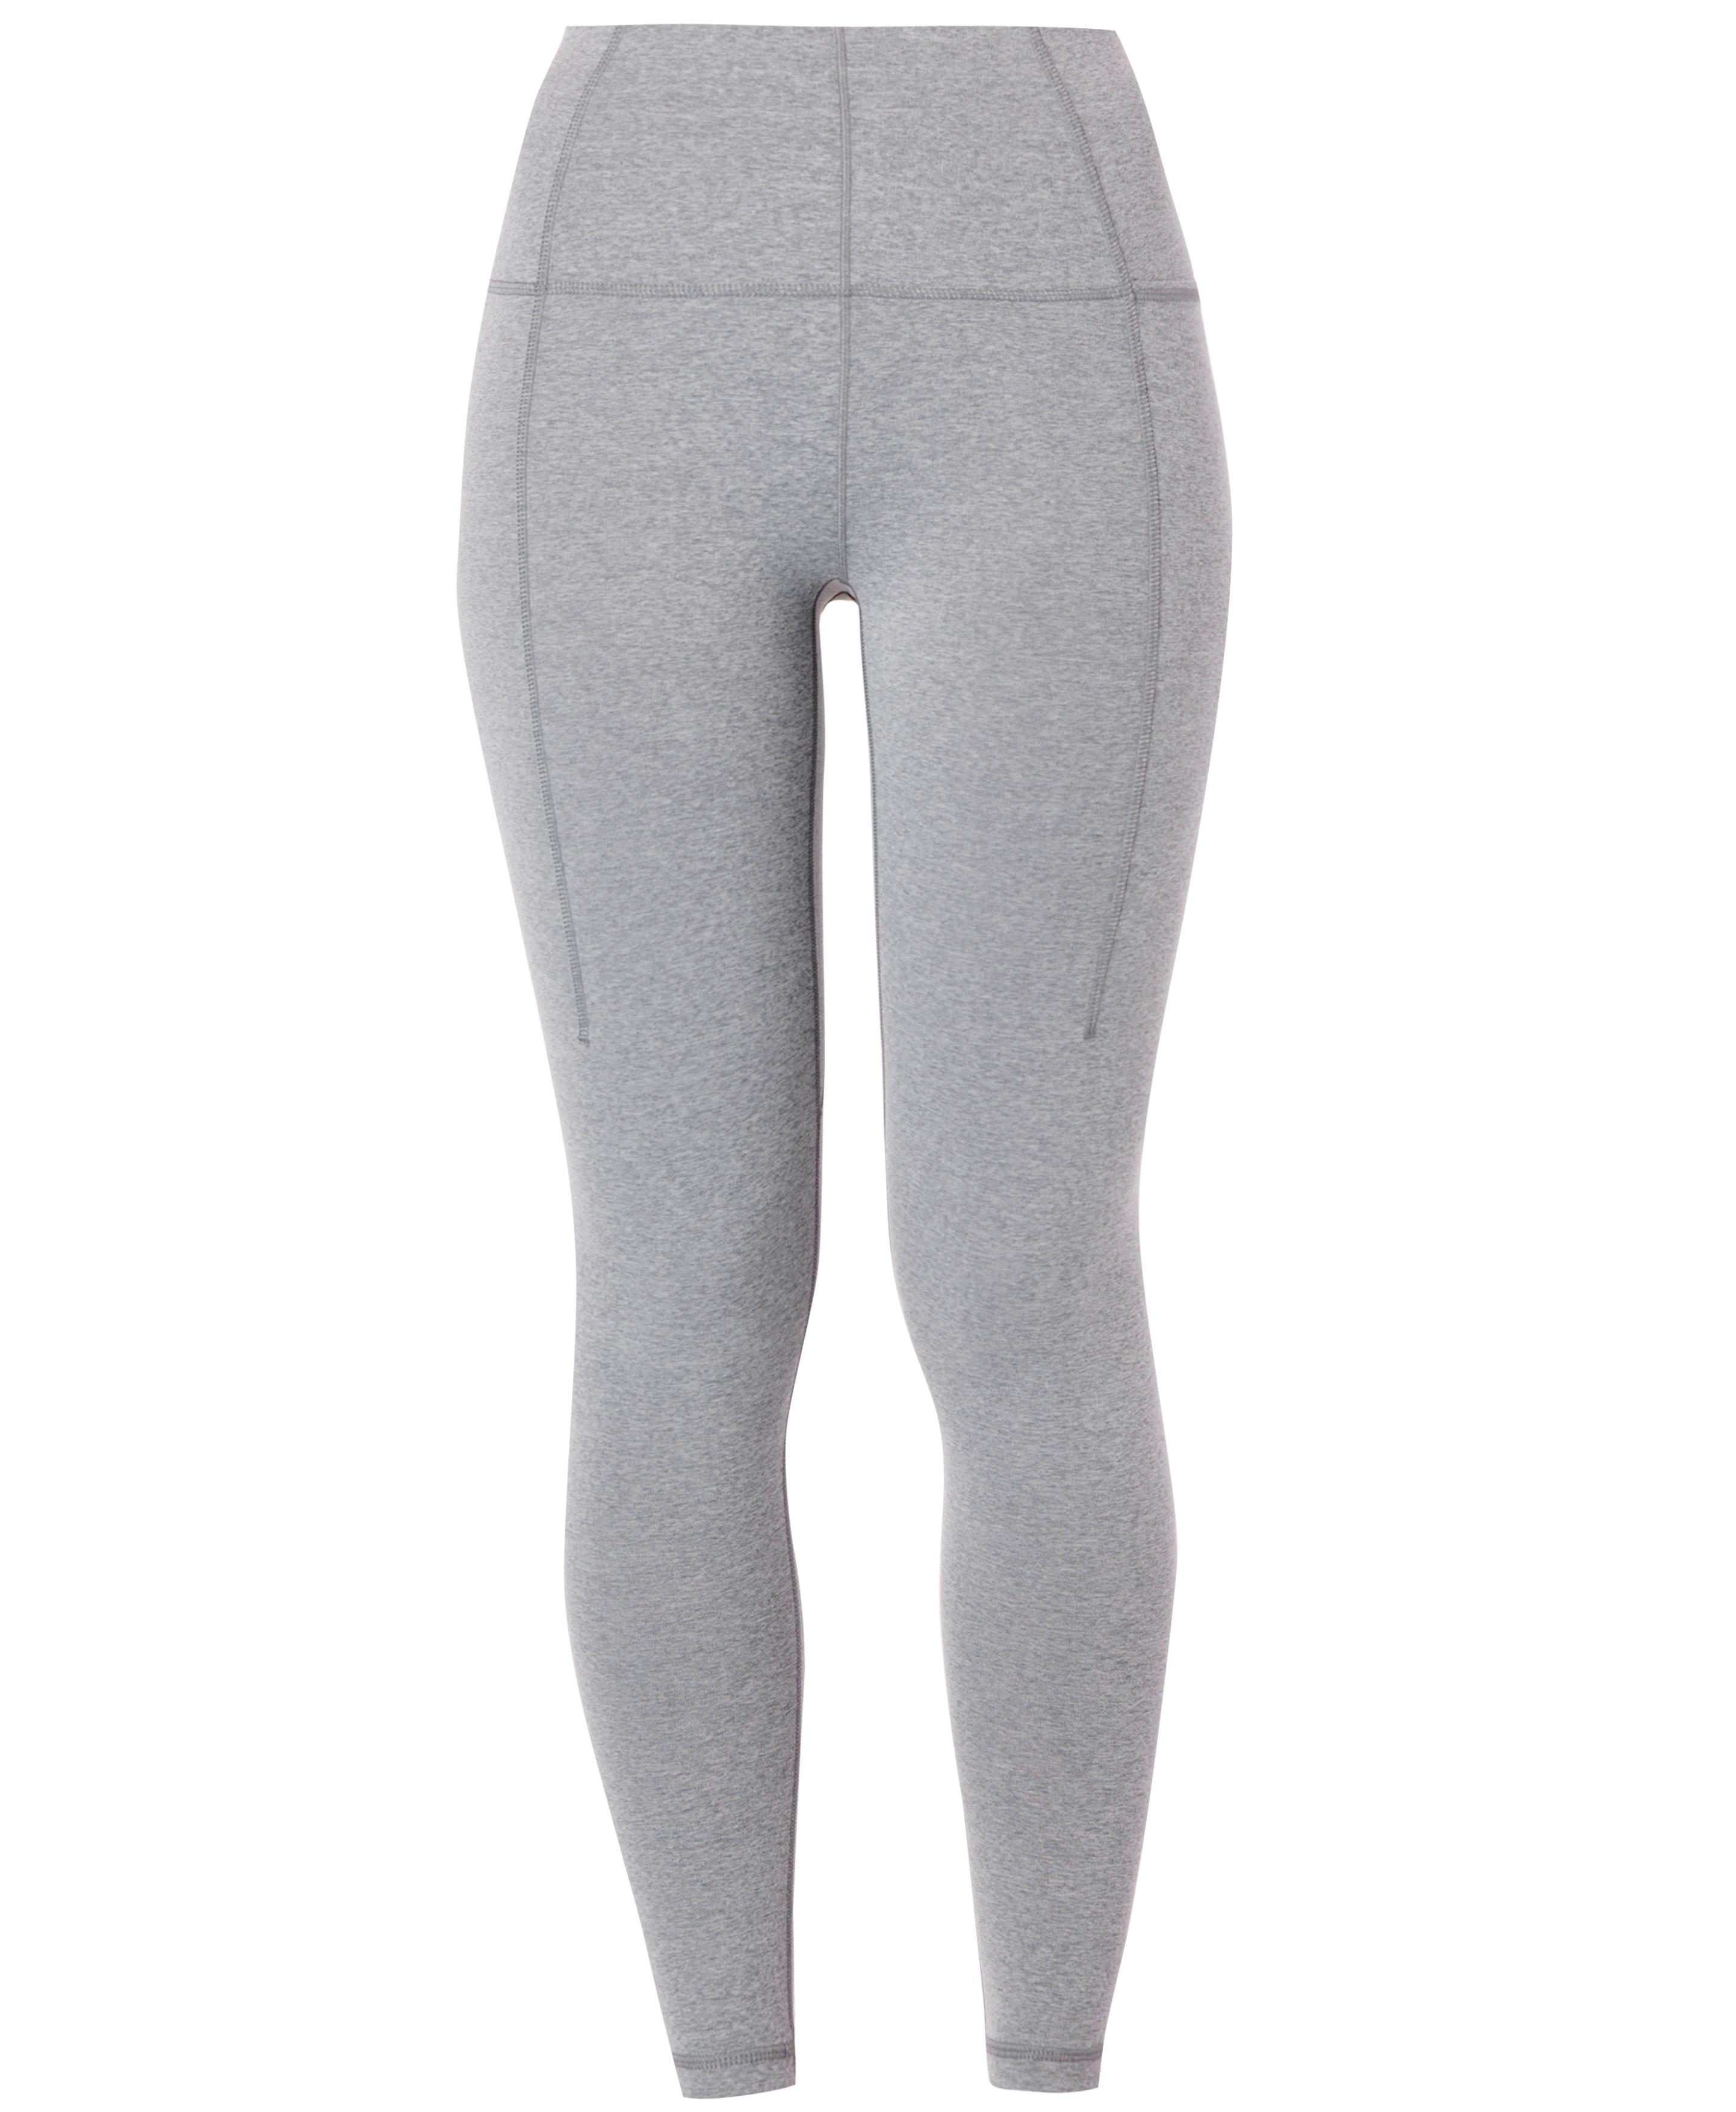 Pockets For Women - Sweaty Betty Super Soft Yoga Leggings, Grey, Women's